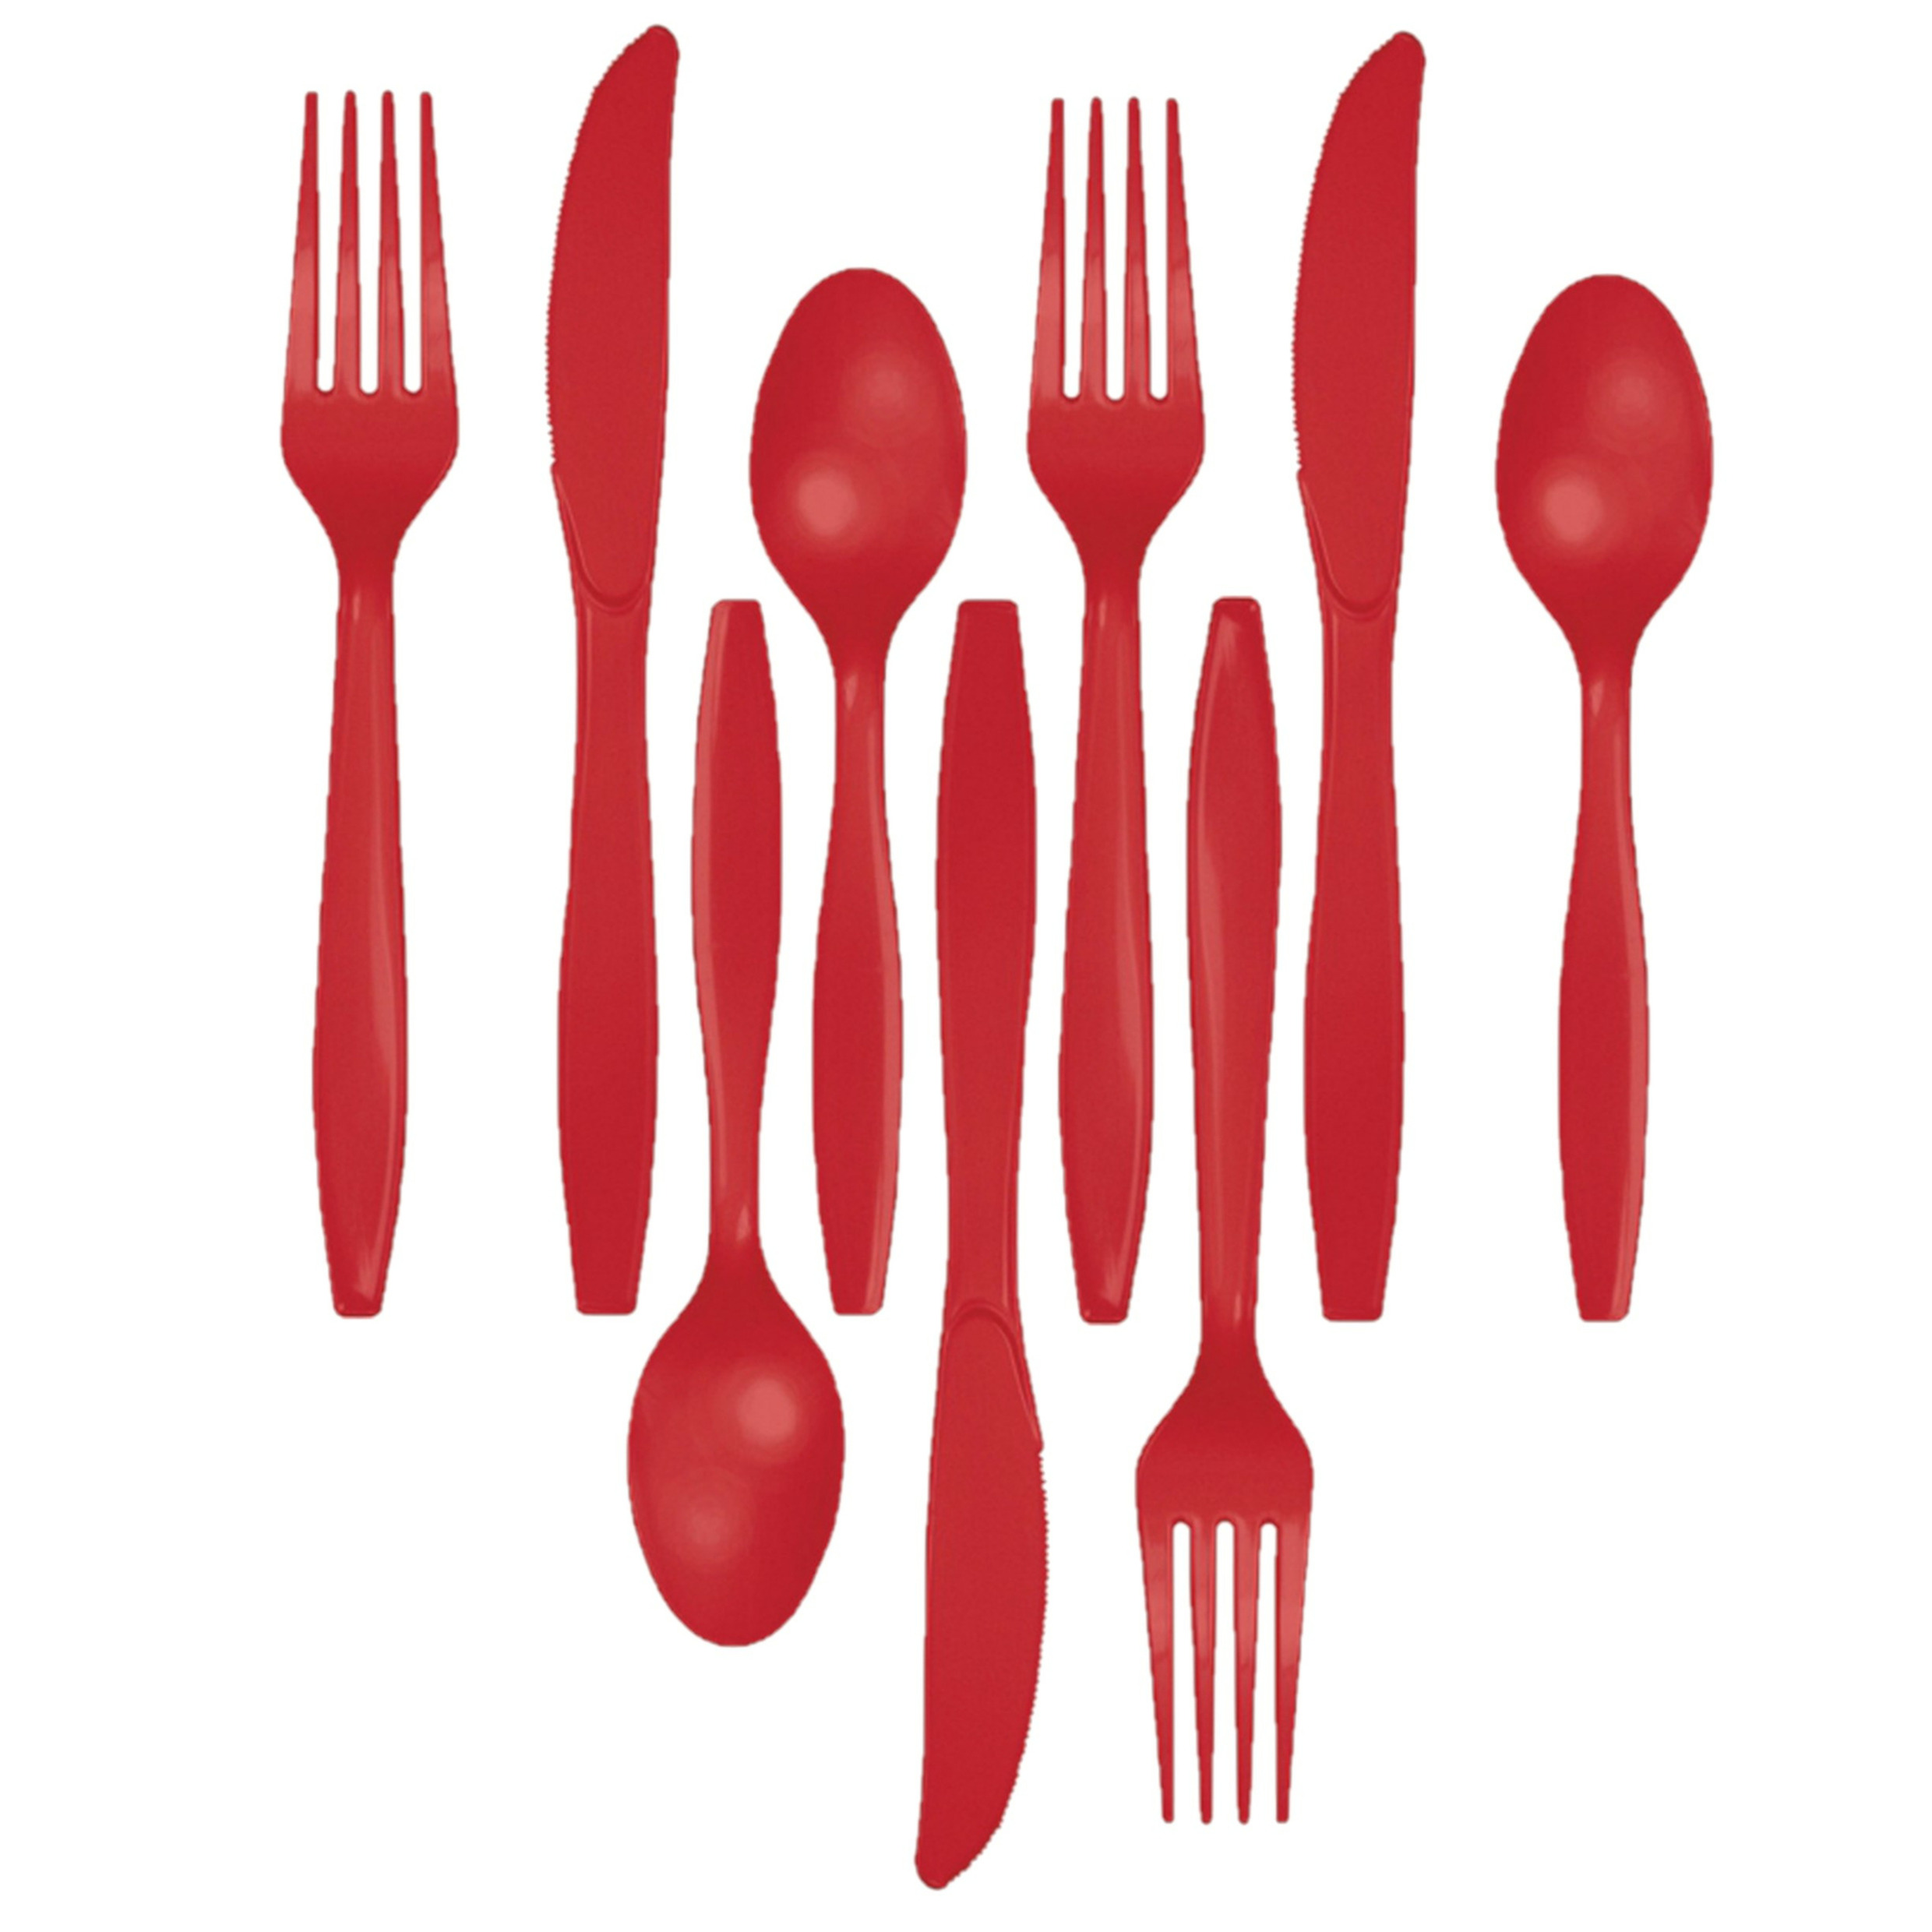 Kunststof bestek party-bbq setje 72x delig rood messen-vorken-lepels herbruikbaar